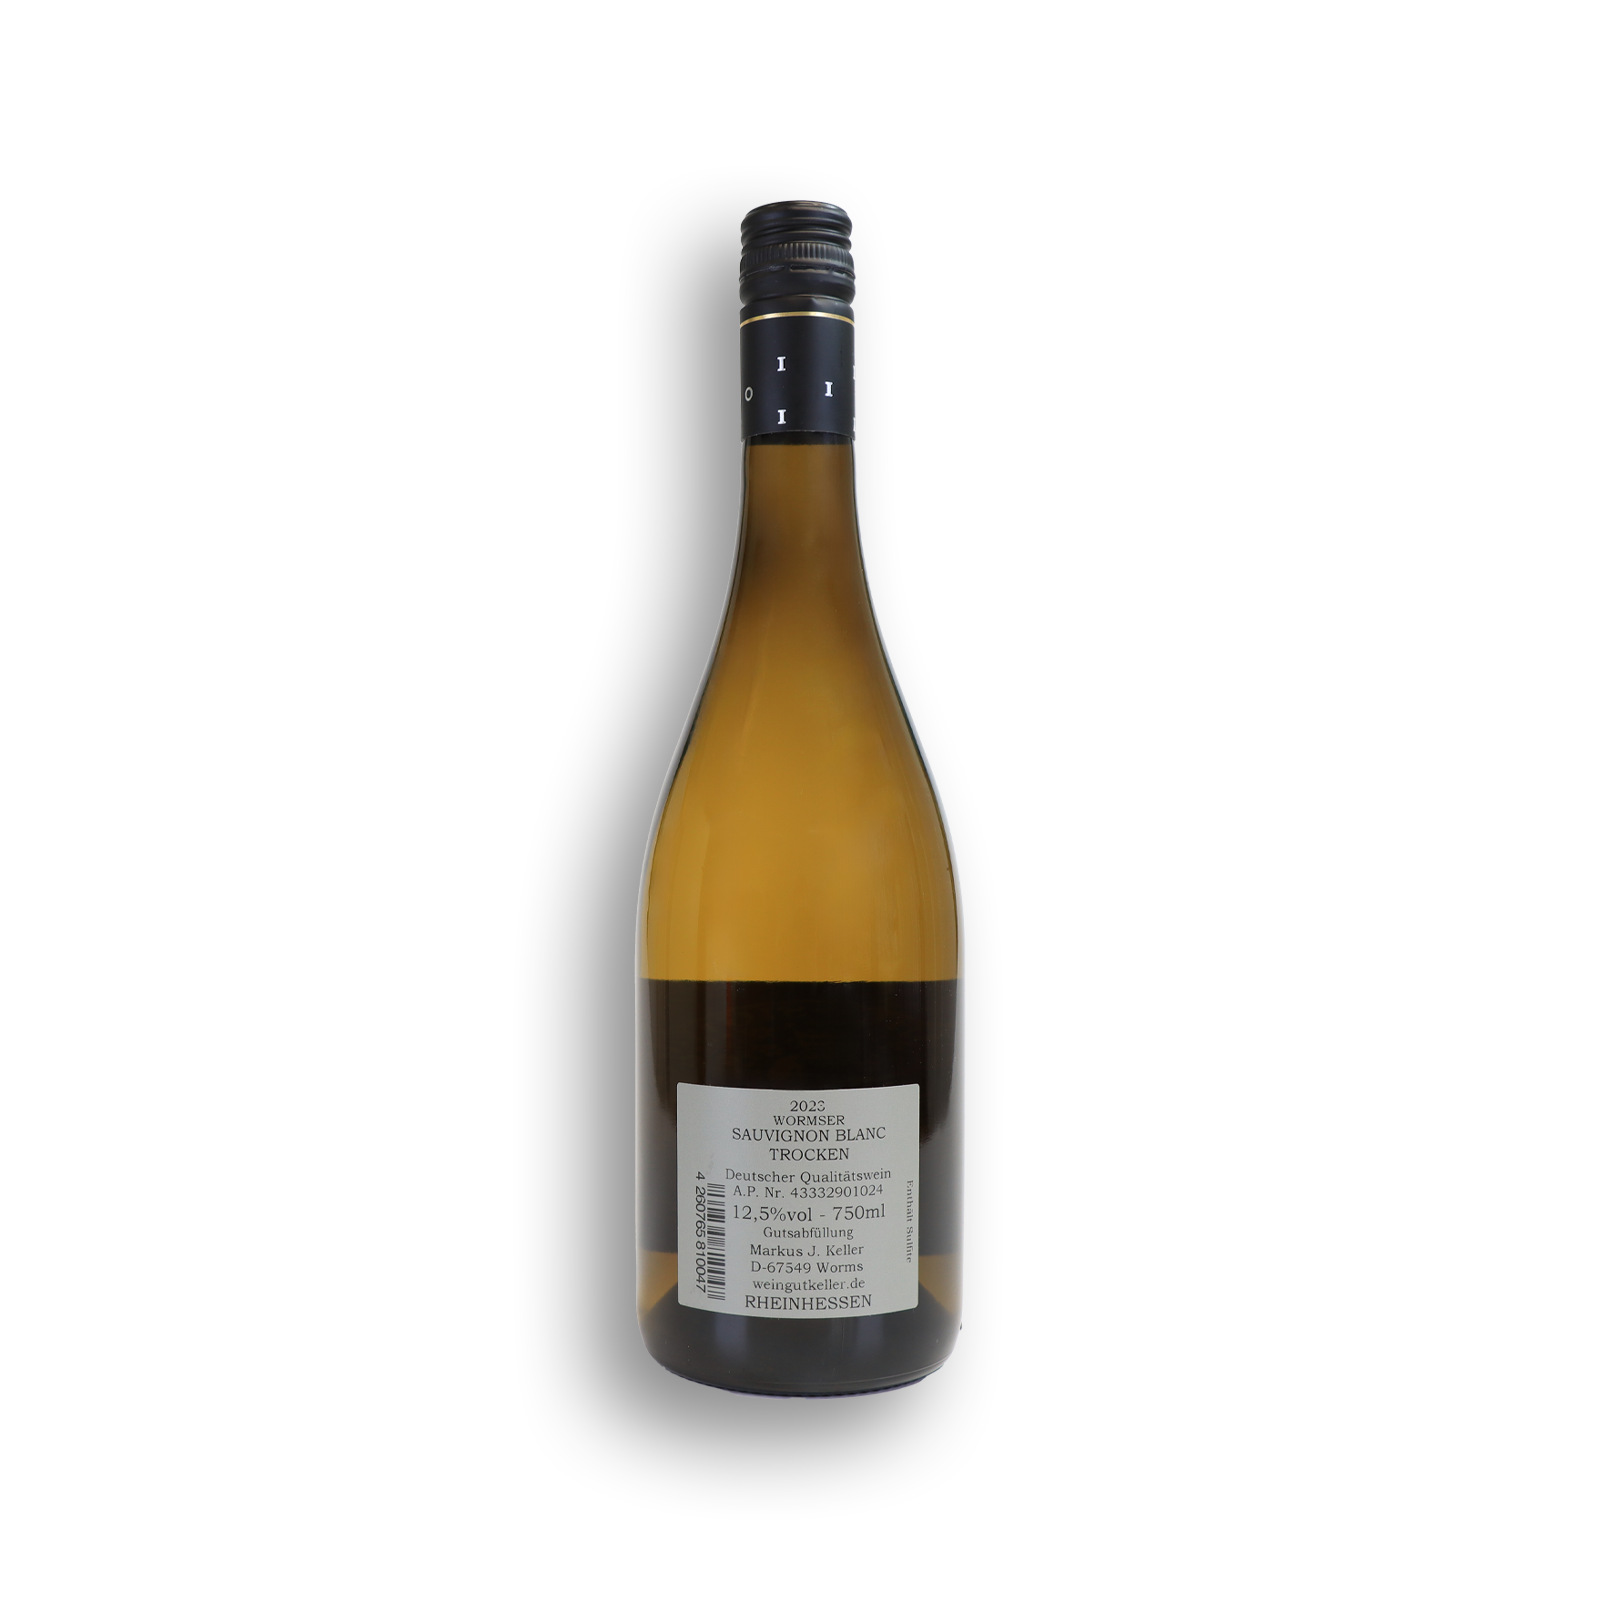 Wormser Sauvignon blanc trocken  von dem Weingut Keller mit Herstellerinformationen.